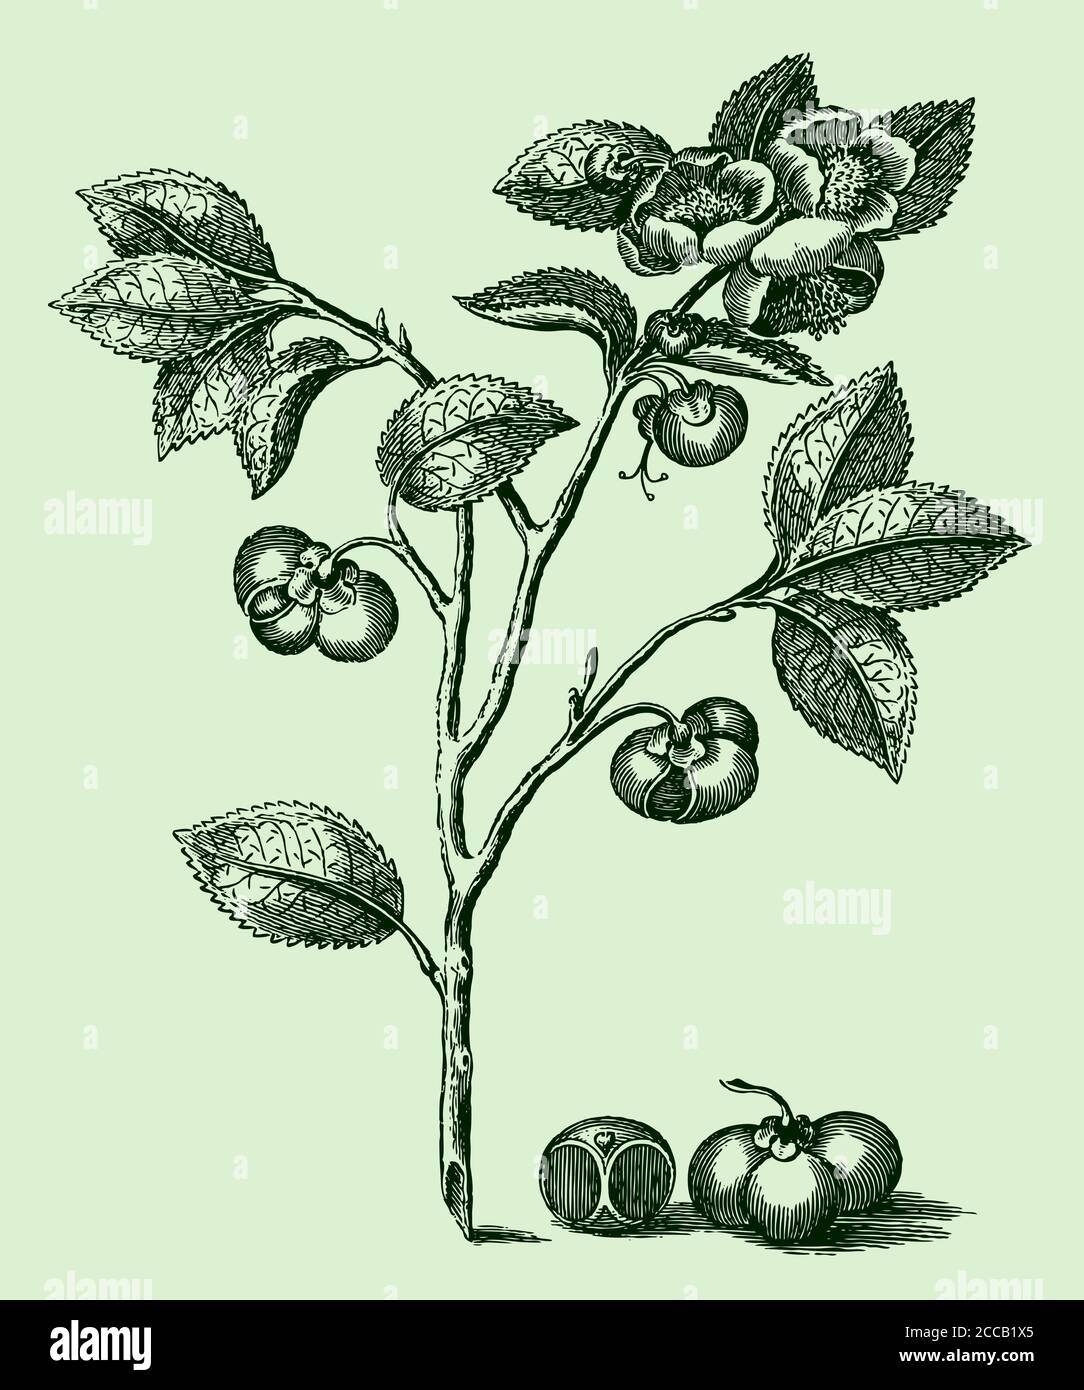 Branche avec les feuilles, les fleurs et les graines de la plante de thé, camellia sinensis isolé sur un fond vert, après une gravure du XVIIIe siècle Illustration de Vecteur